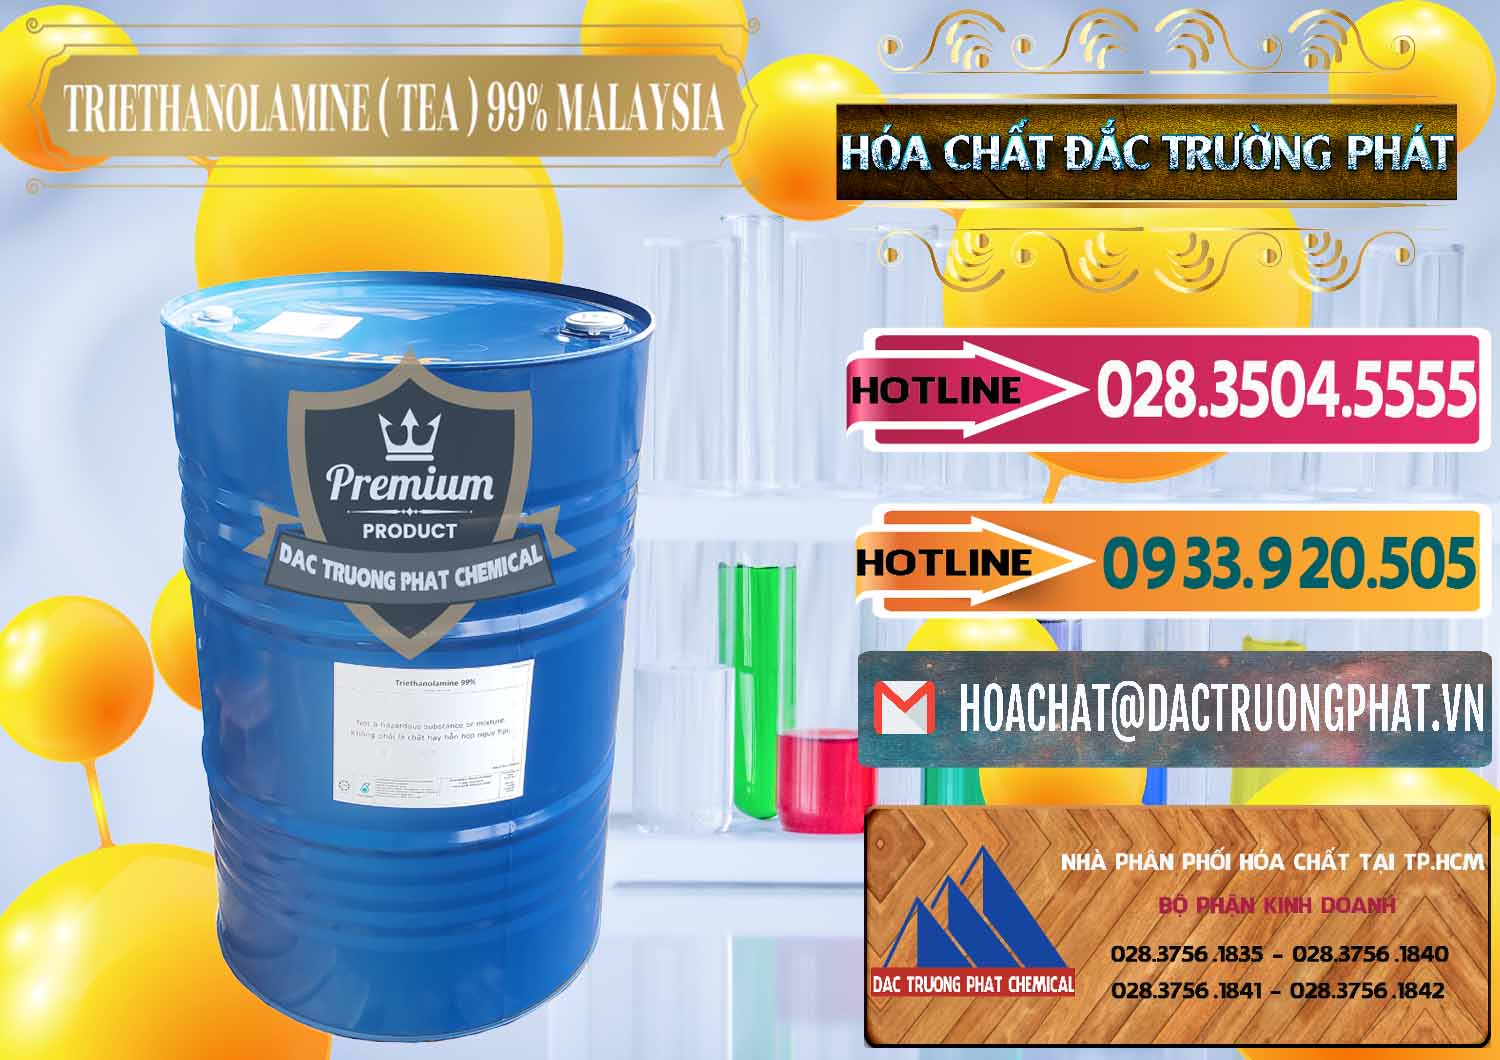 Cty nhập khẩu ( bán ) TEA - Triethanolamine 99% Mã Lai Malaysia - 0323 - Cty kinh doanh & phân phối hóa chất tại TP.HCM - dactruongphat.vn